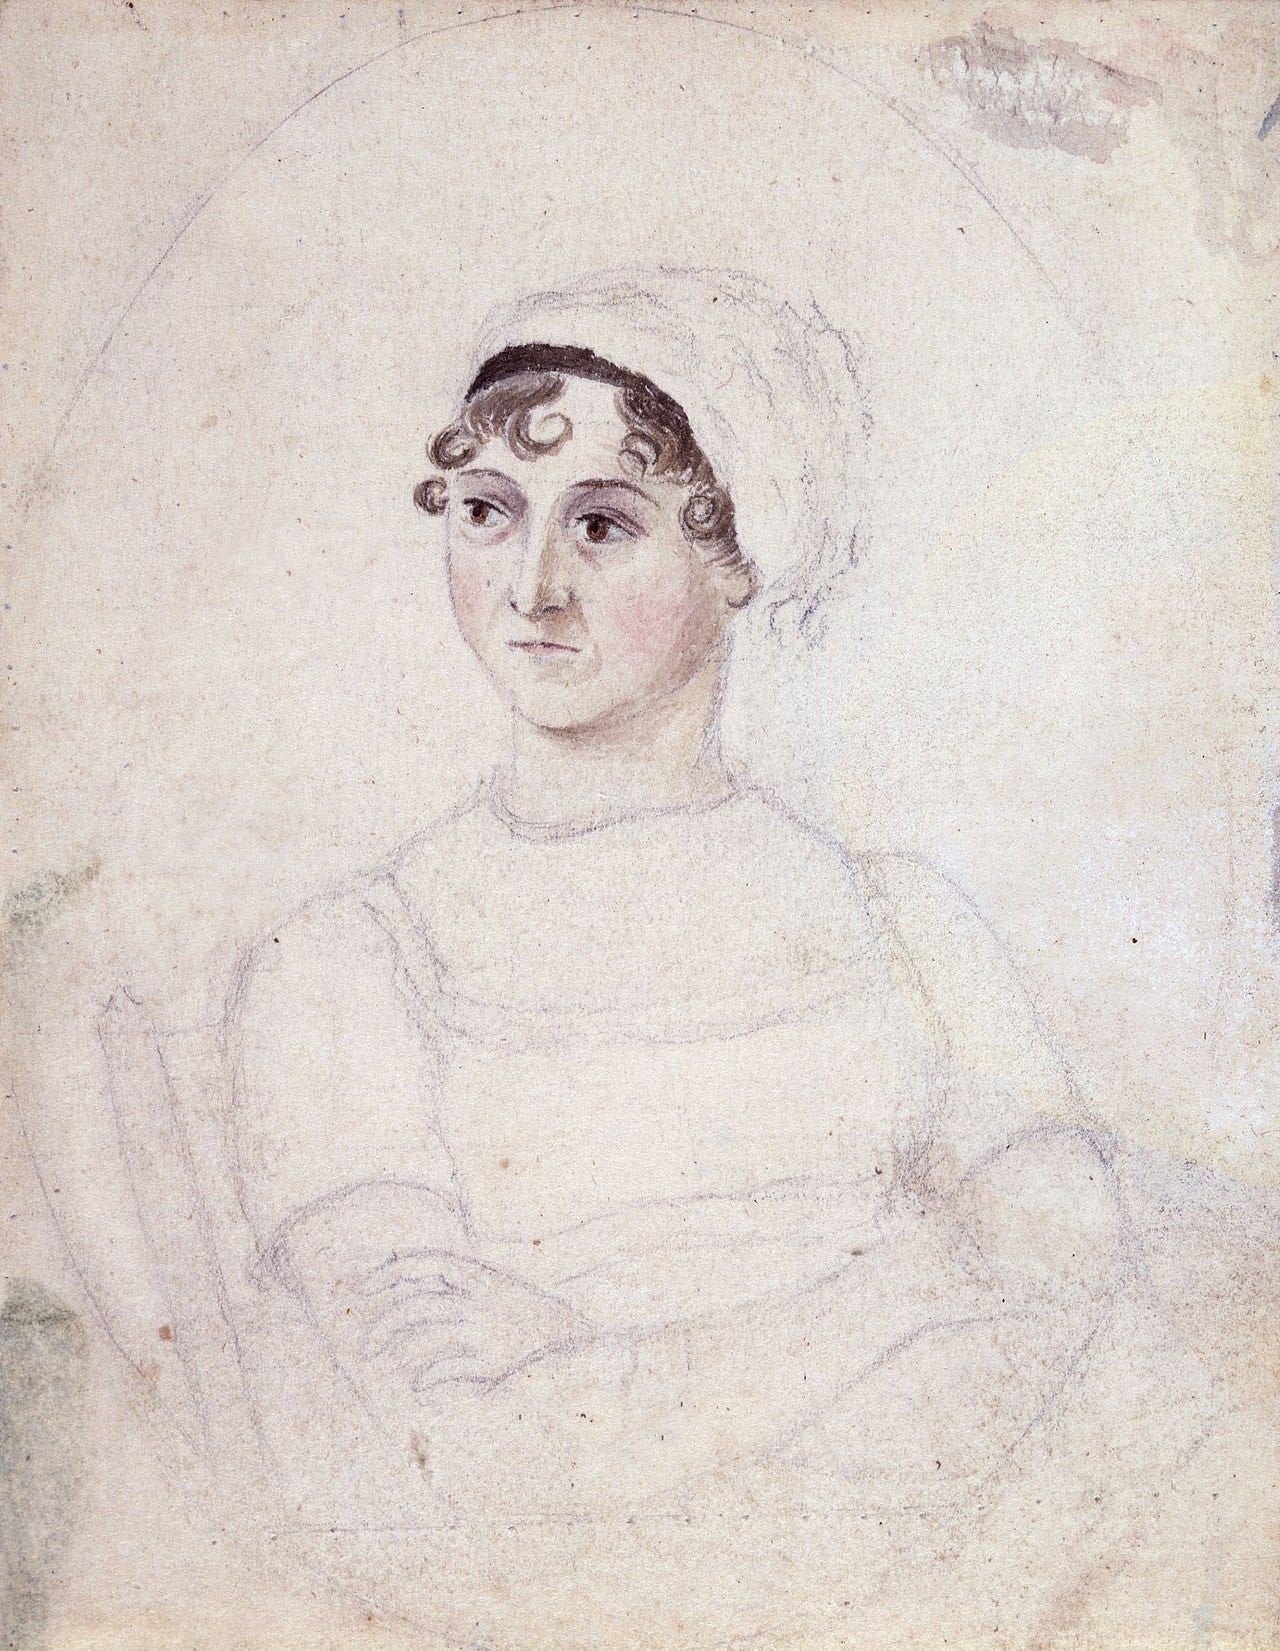 Watercolour-and-pencil portrait of Jane Austen